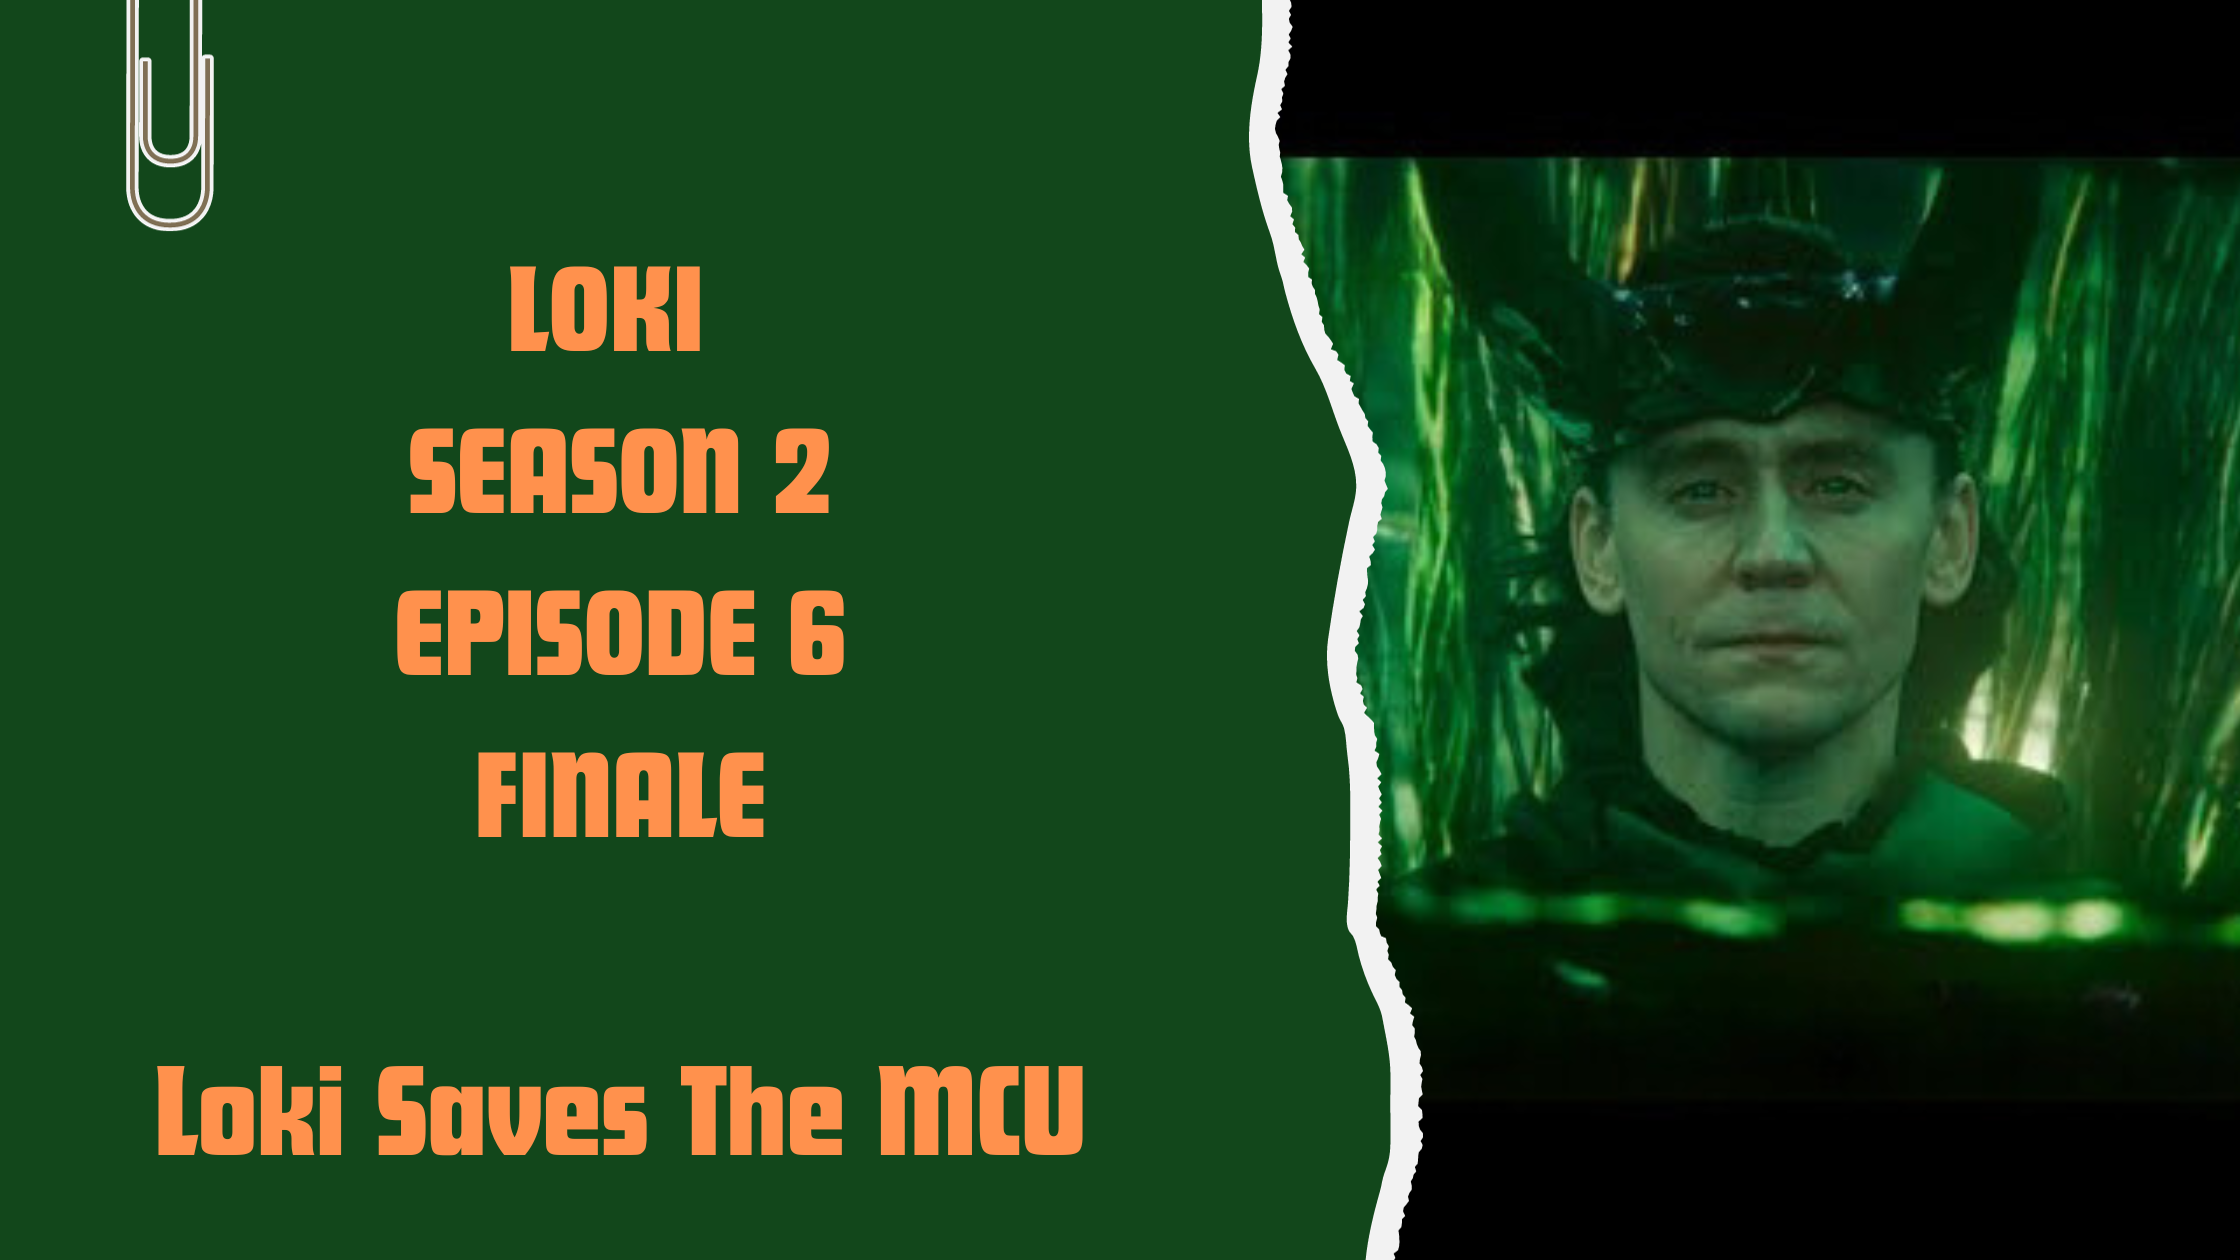 Loki Season 2 Episode 6 Finale Review: Loki Saves The MCU